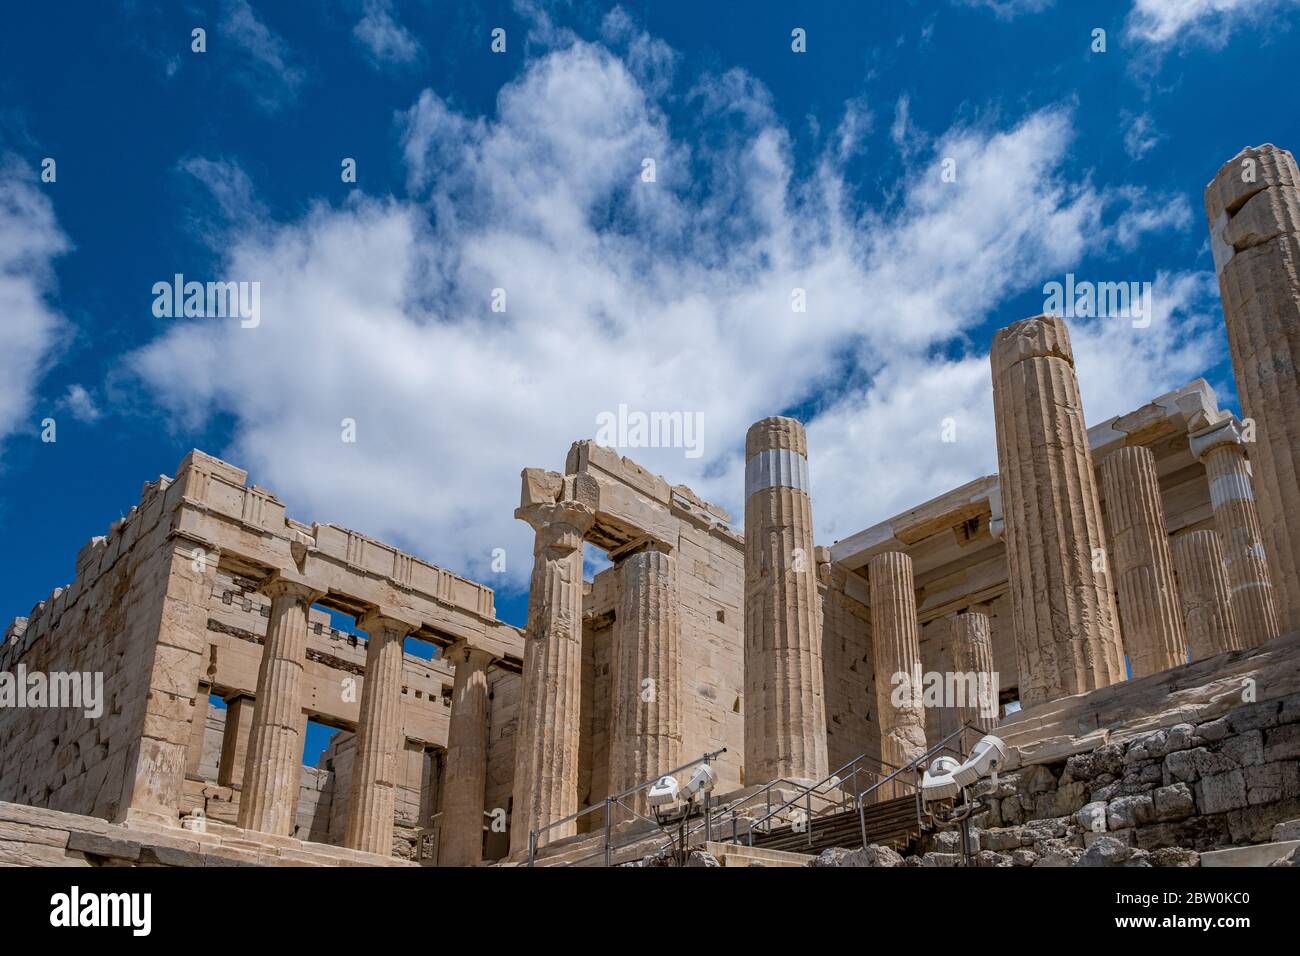 Akropolis von Athen, Griechenland Wahrzeichen. Propylaea Eingangstor leer, Altgriechisch Säulen und Treppen, niedrige Winkel Blick, blau bewölkten Himmel. Stockfoto